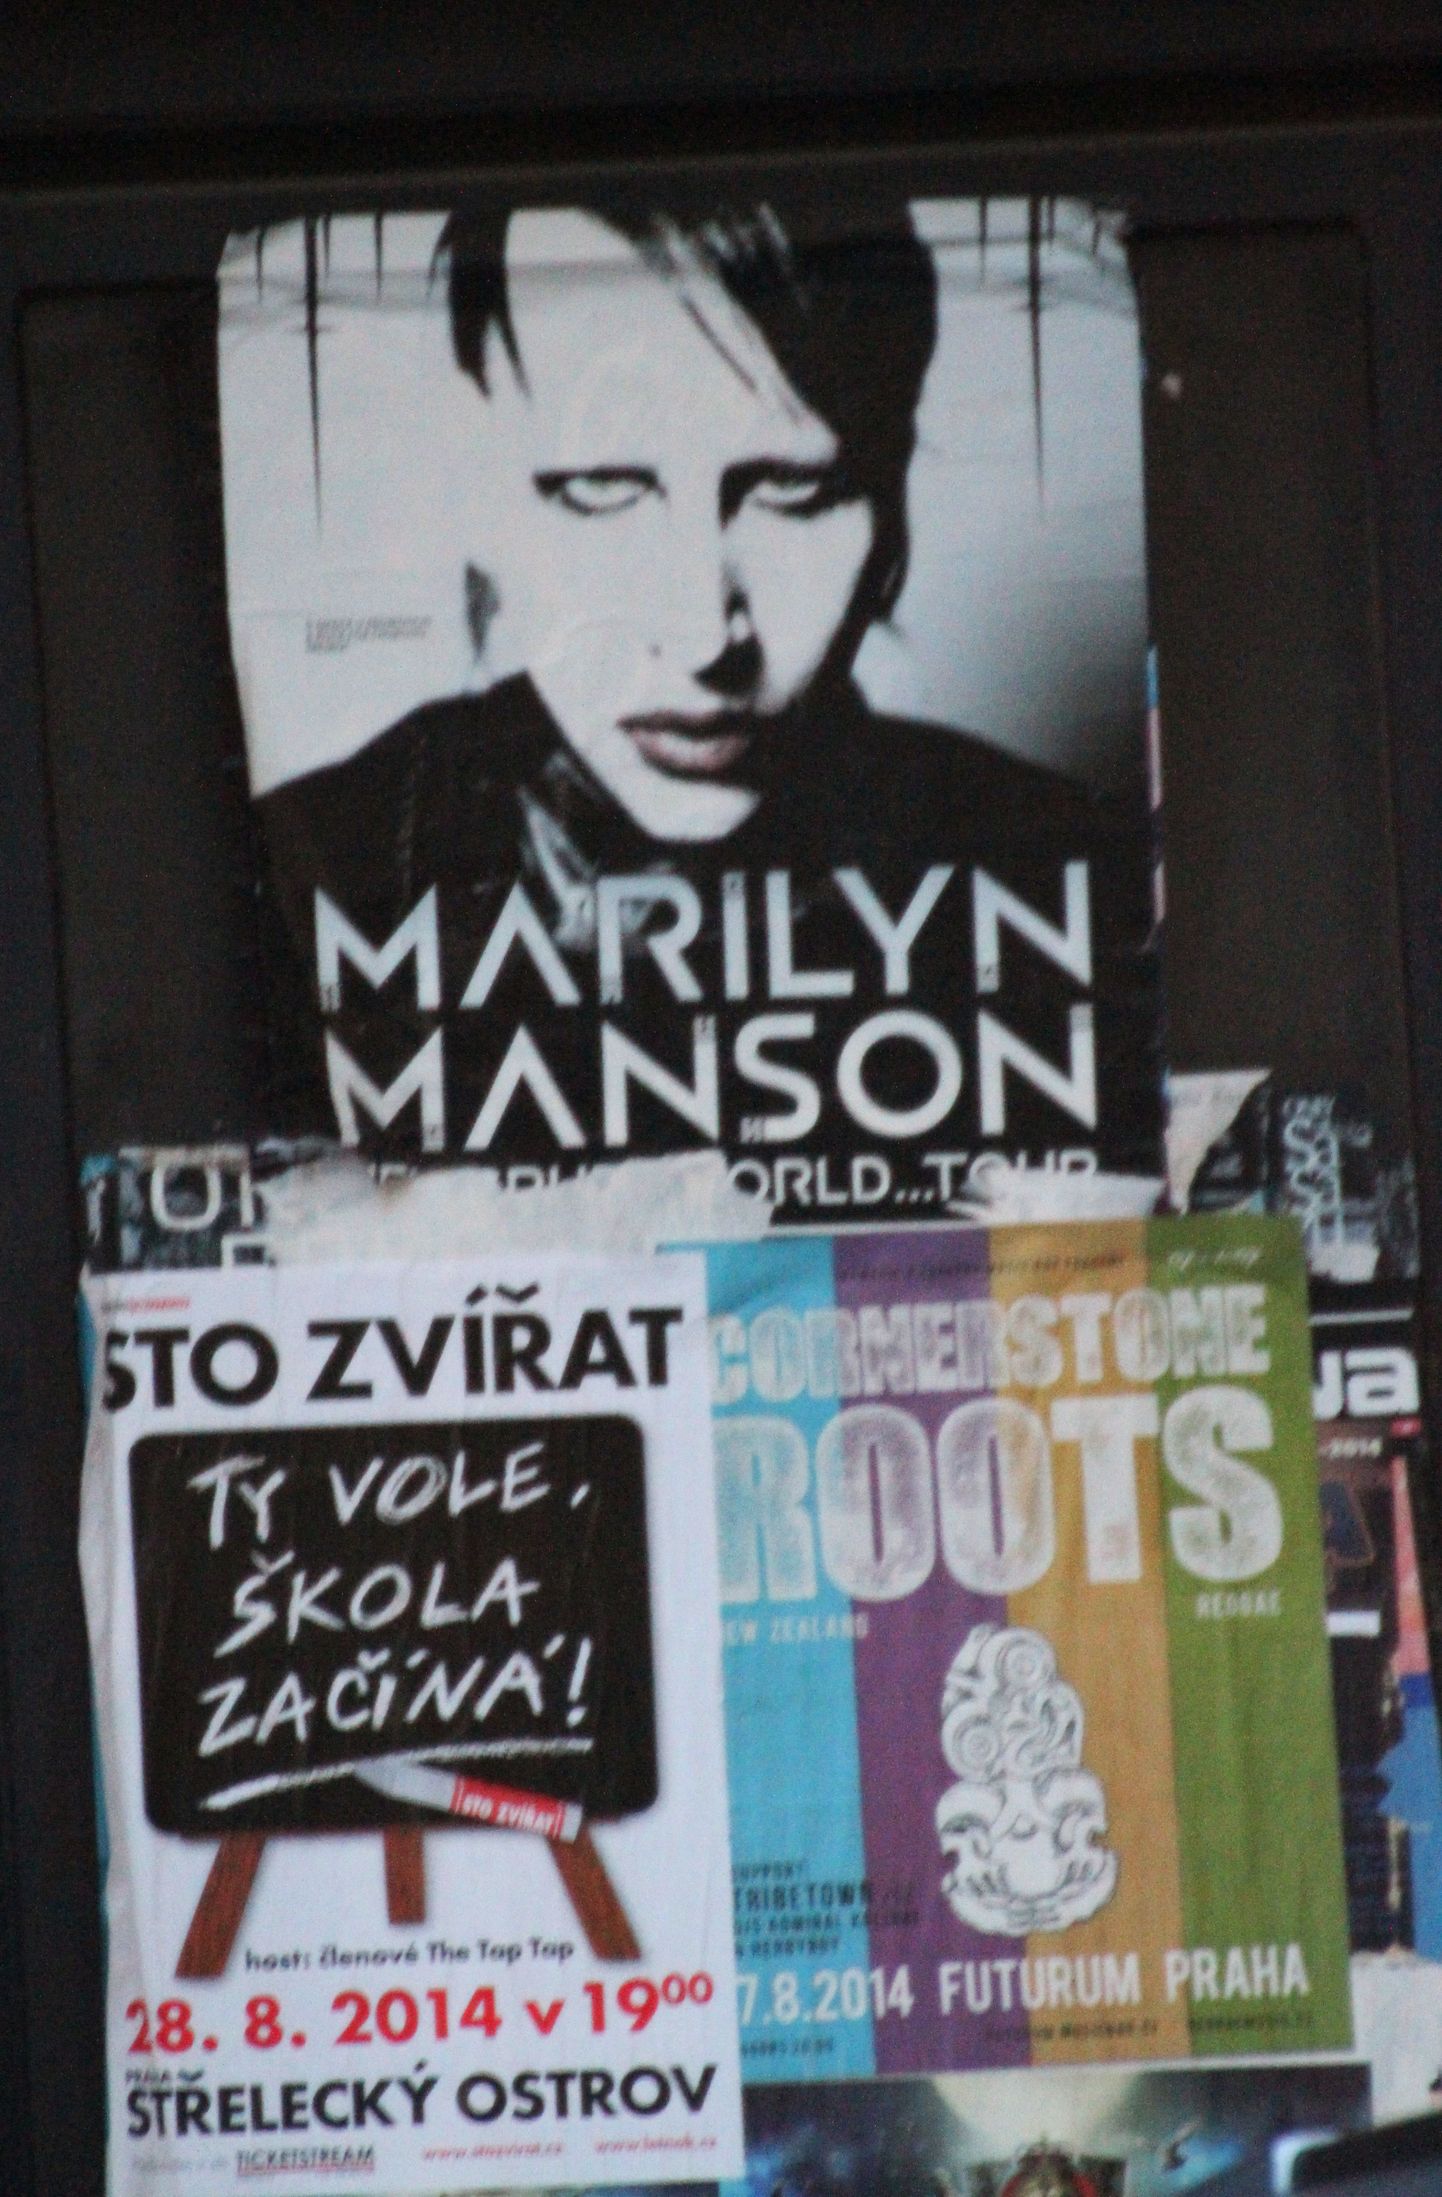 Marilyn Mansoni kontsert ja teisik